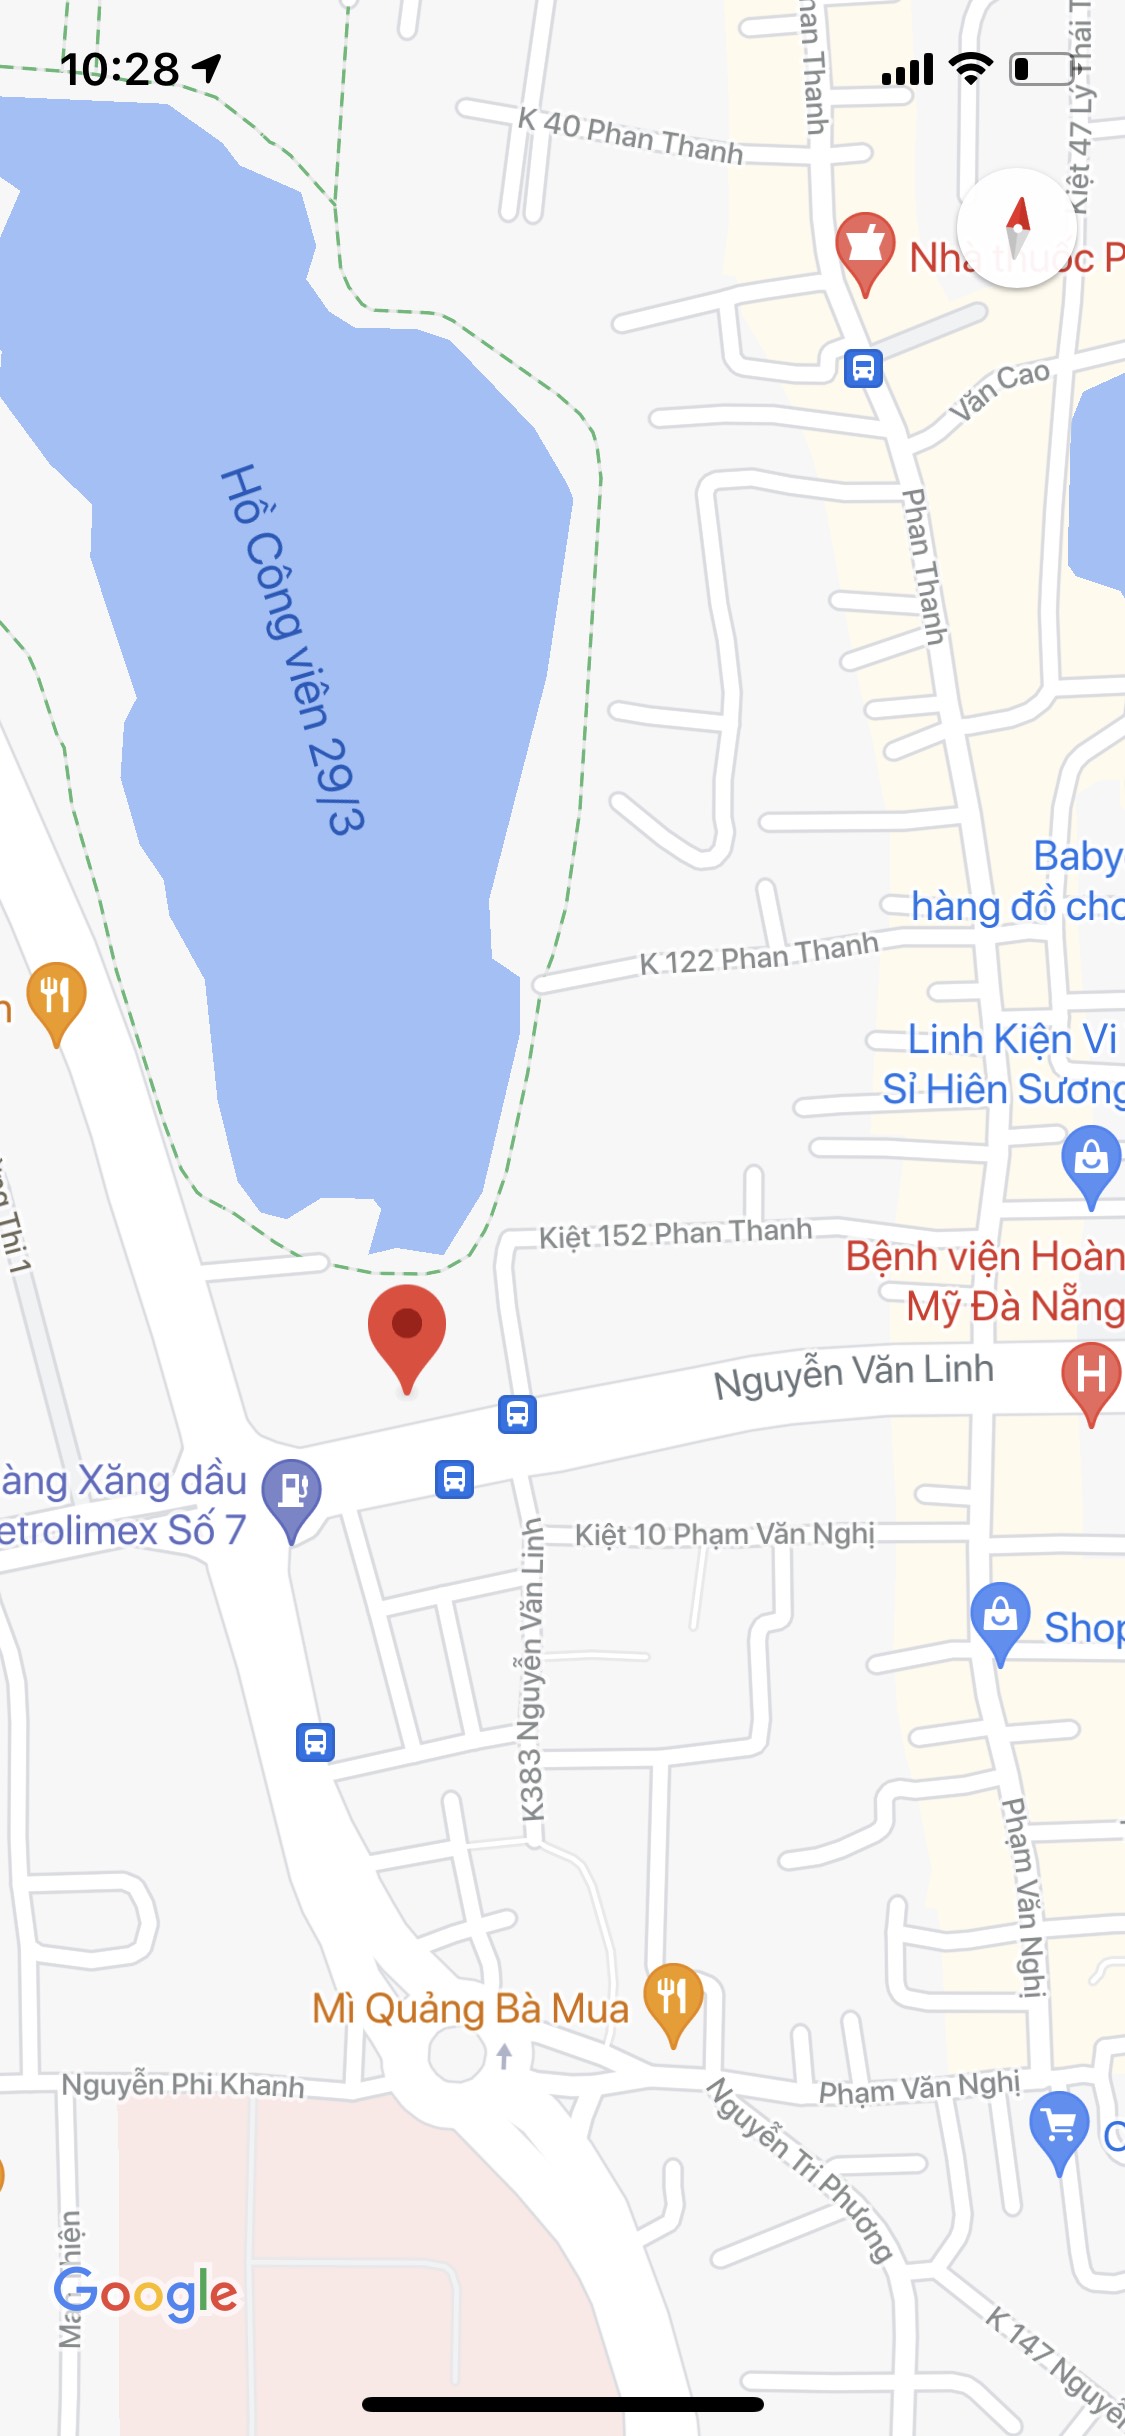 Bán lô đất mặt tiền đường Nguyễn Văn Linh, gần sân bay. DT: 275m2, ngang 10m. Giá: 270 triệu/m2